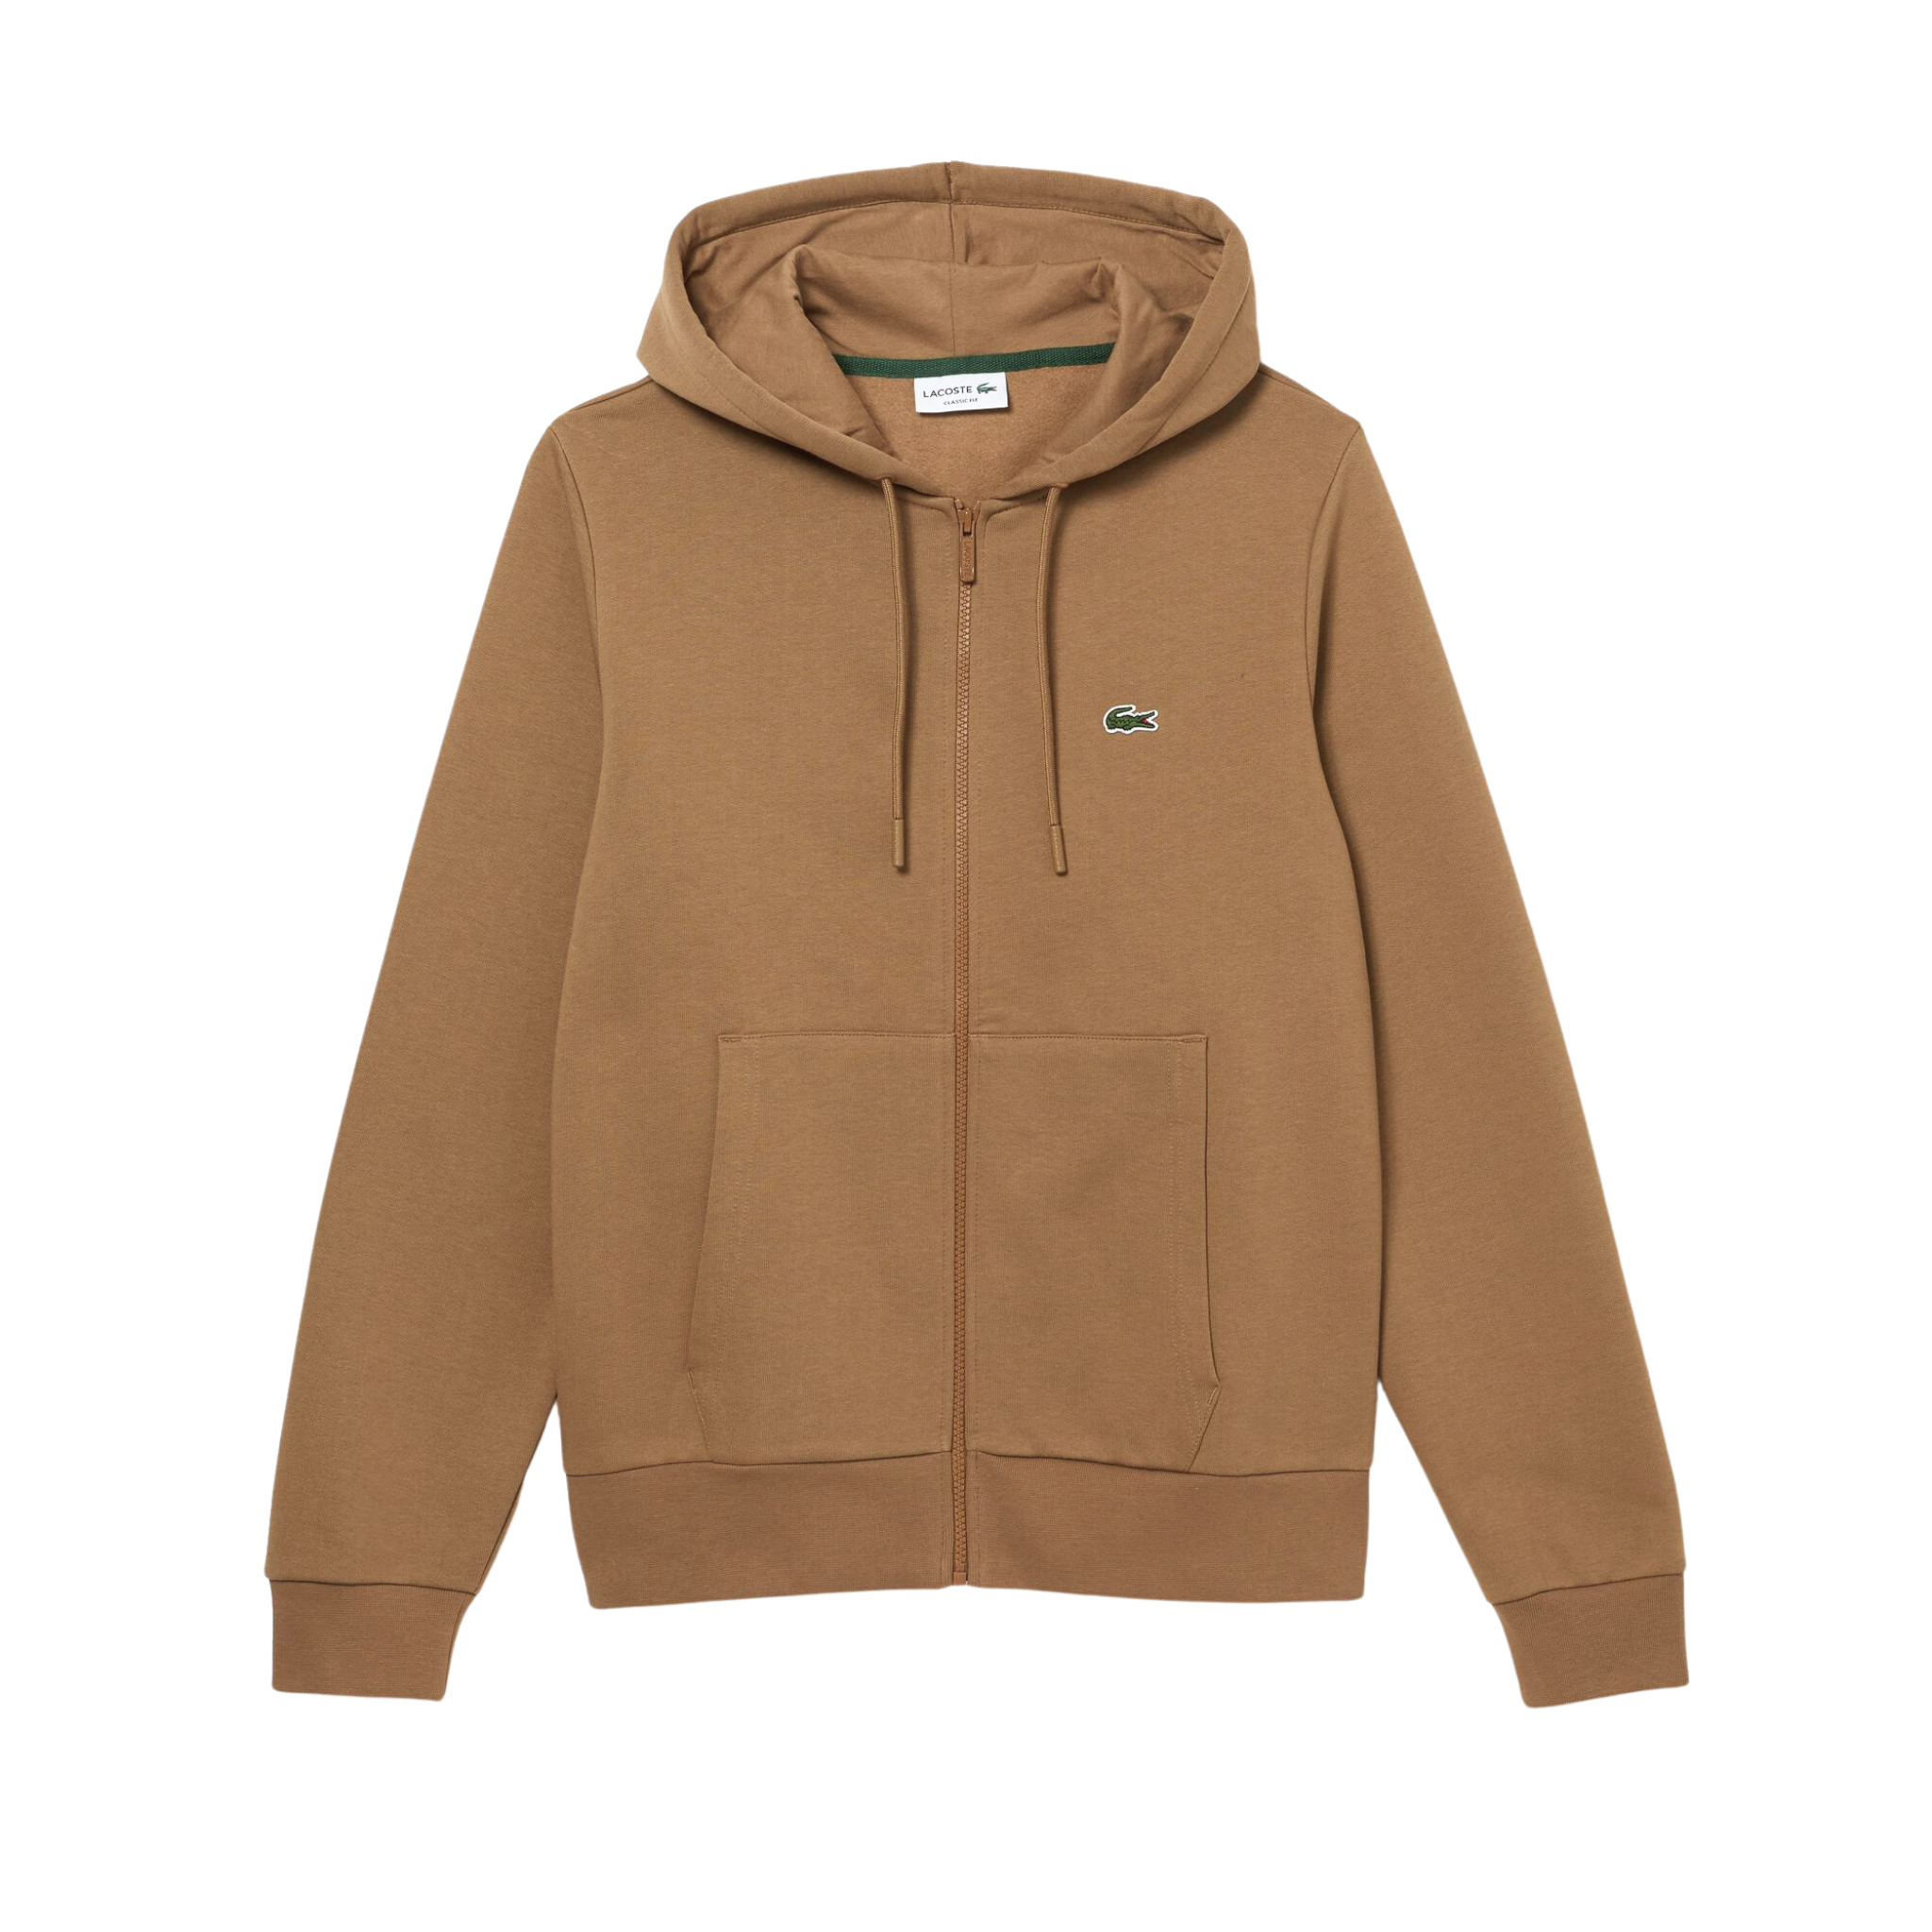 Lacoste Kangaroo Pocket Fleece Zipped Sweatshirt (Brown) - Lacoste